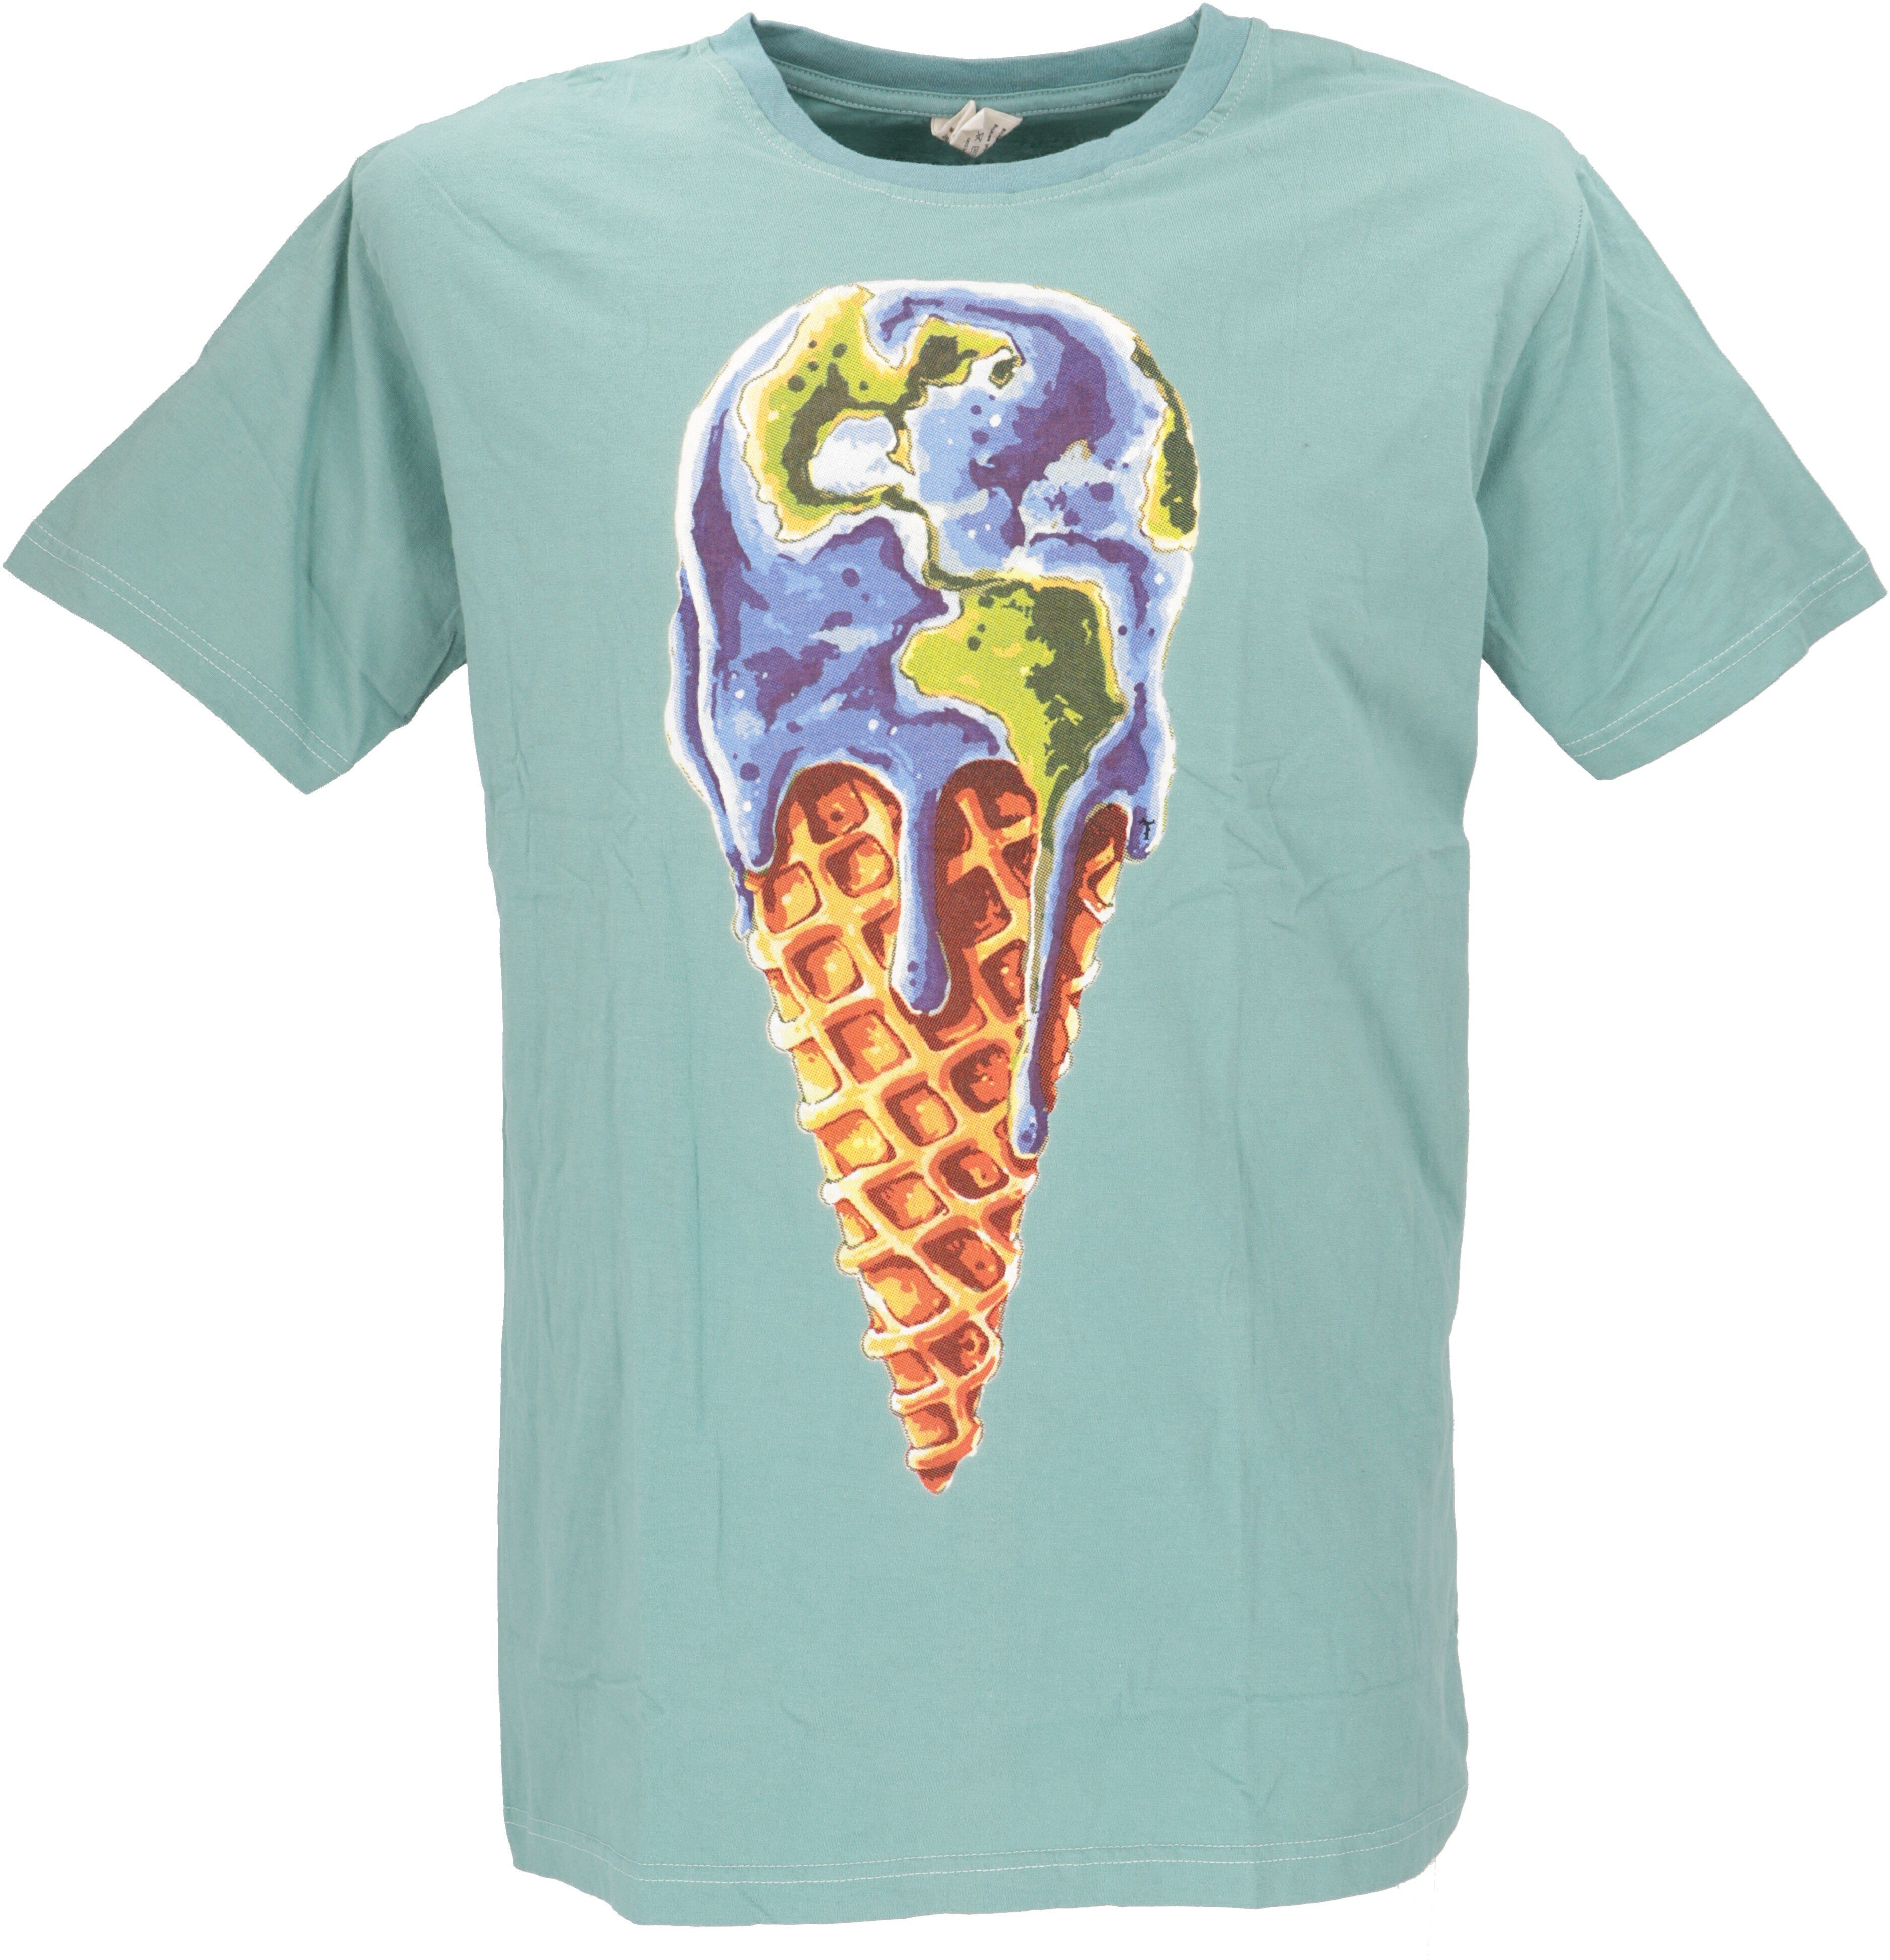 Guru-Shop T-Shirt Retro T-Shirt, Tree save earth T-Shirt - Ice/aqua Retro